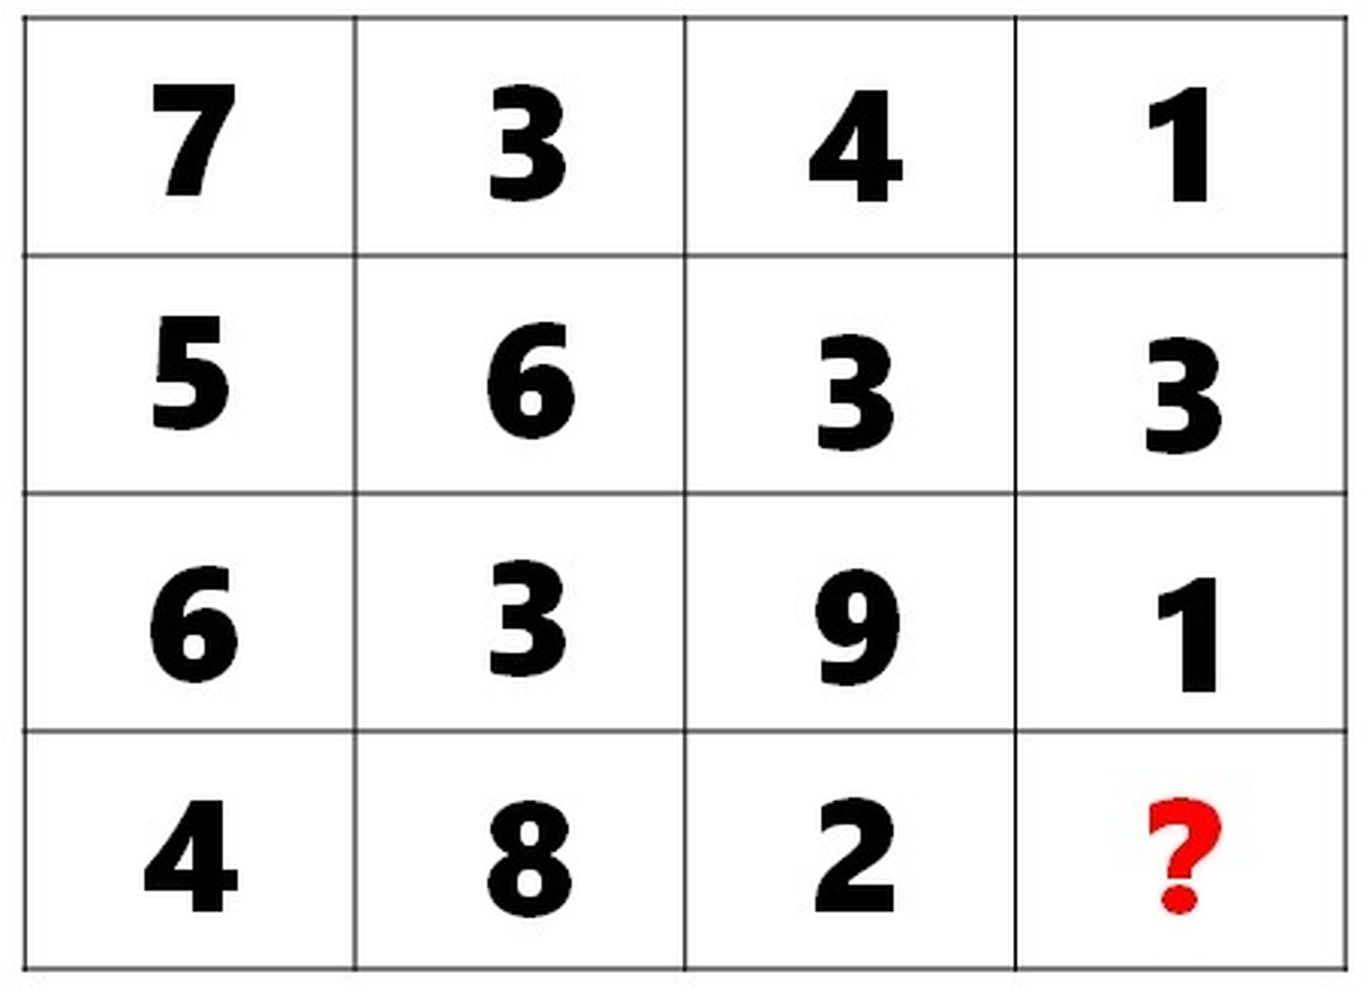 دو تست IQ ریاضی؛ فقط باهوش‌ها می‌توانند اعداد گمشده در این پازل ریاضی را پیدا کنند؟